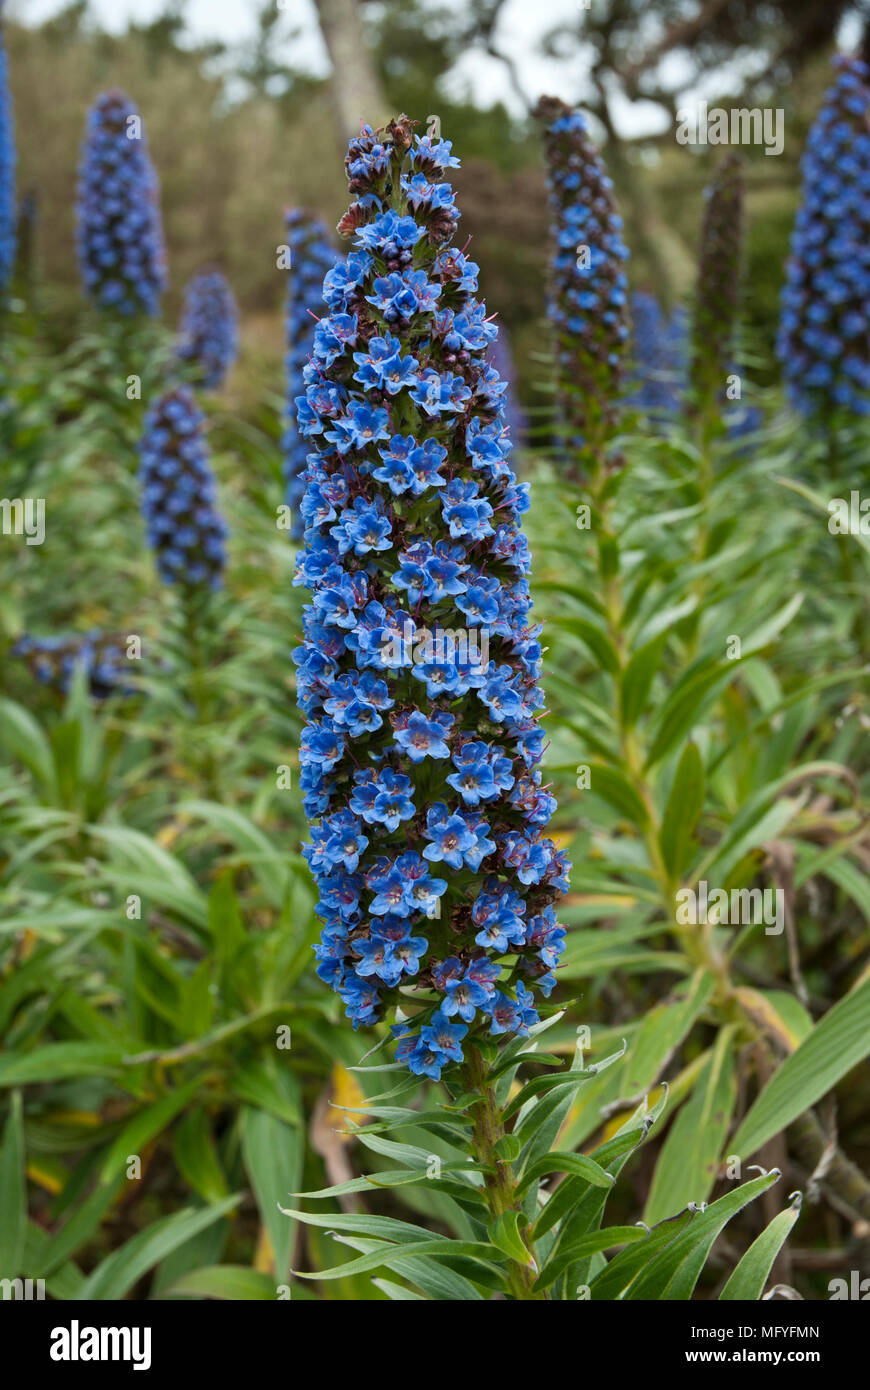 Close up di blu chiaro echium candicans fiore in primo piano con altri echium fiori e piante in background. Foto Stock